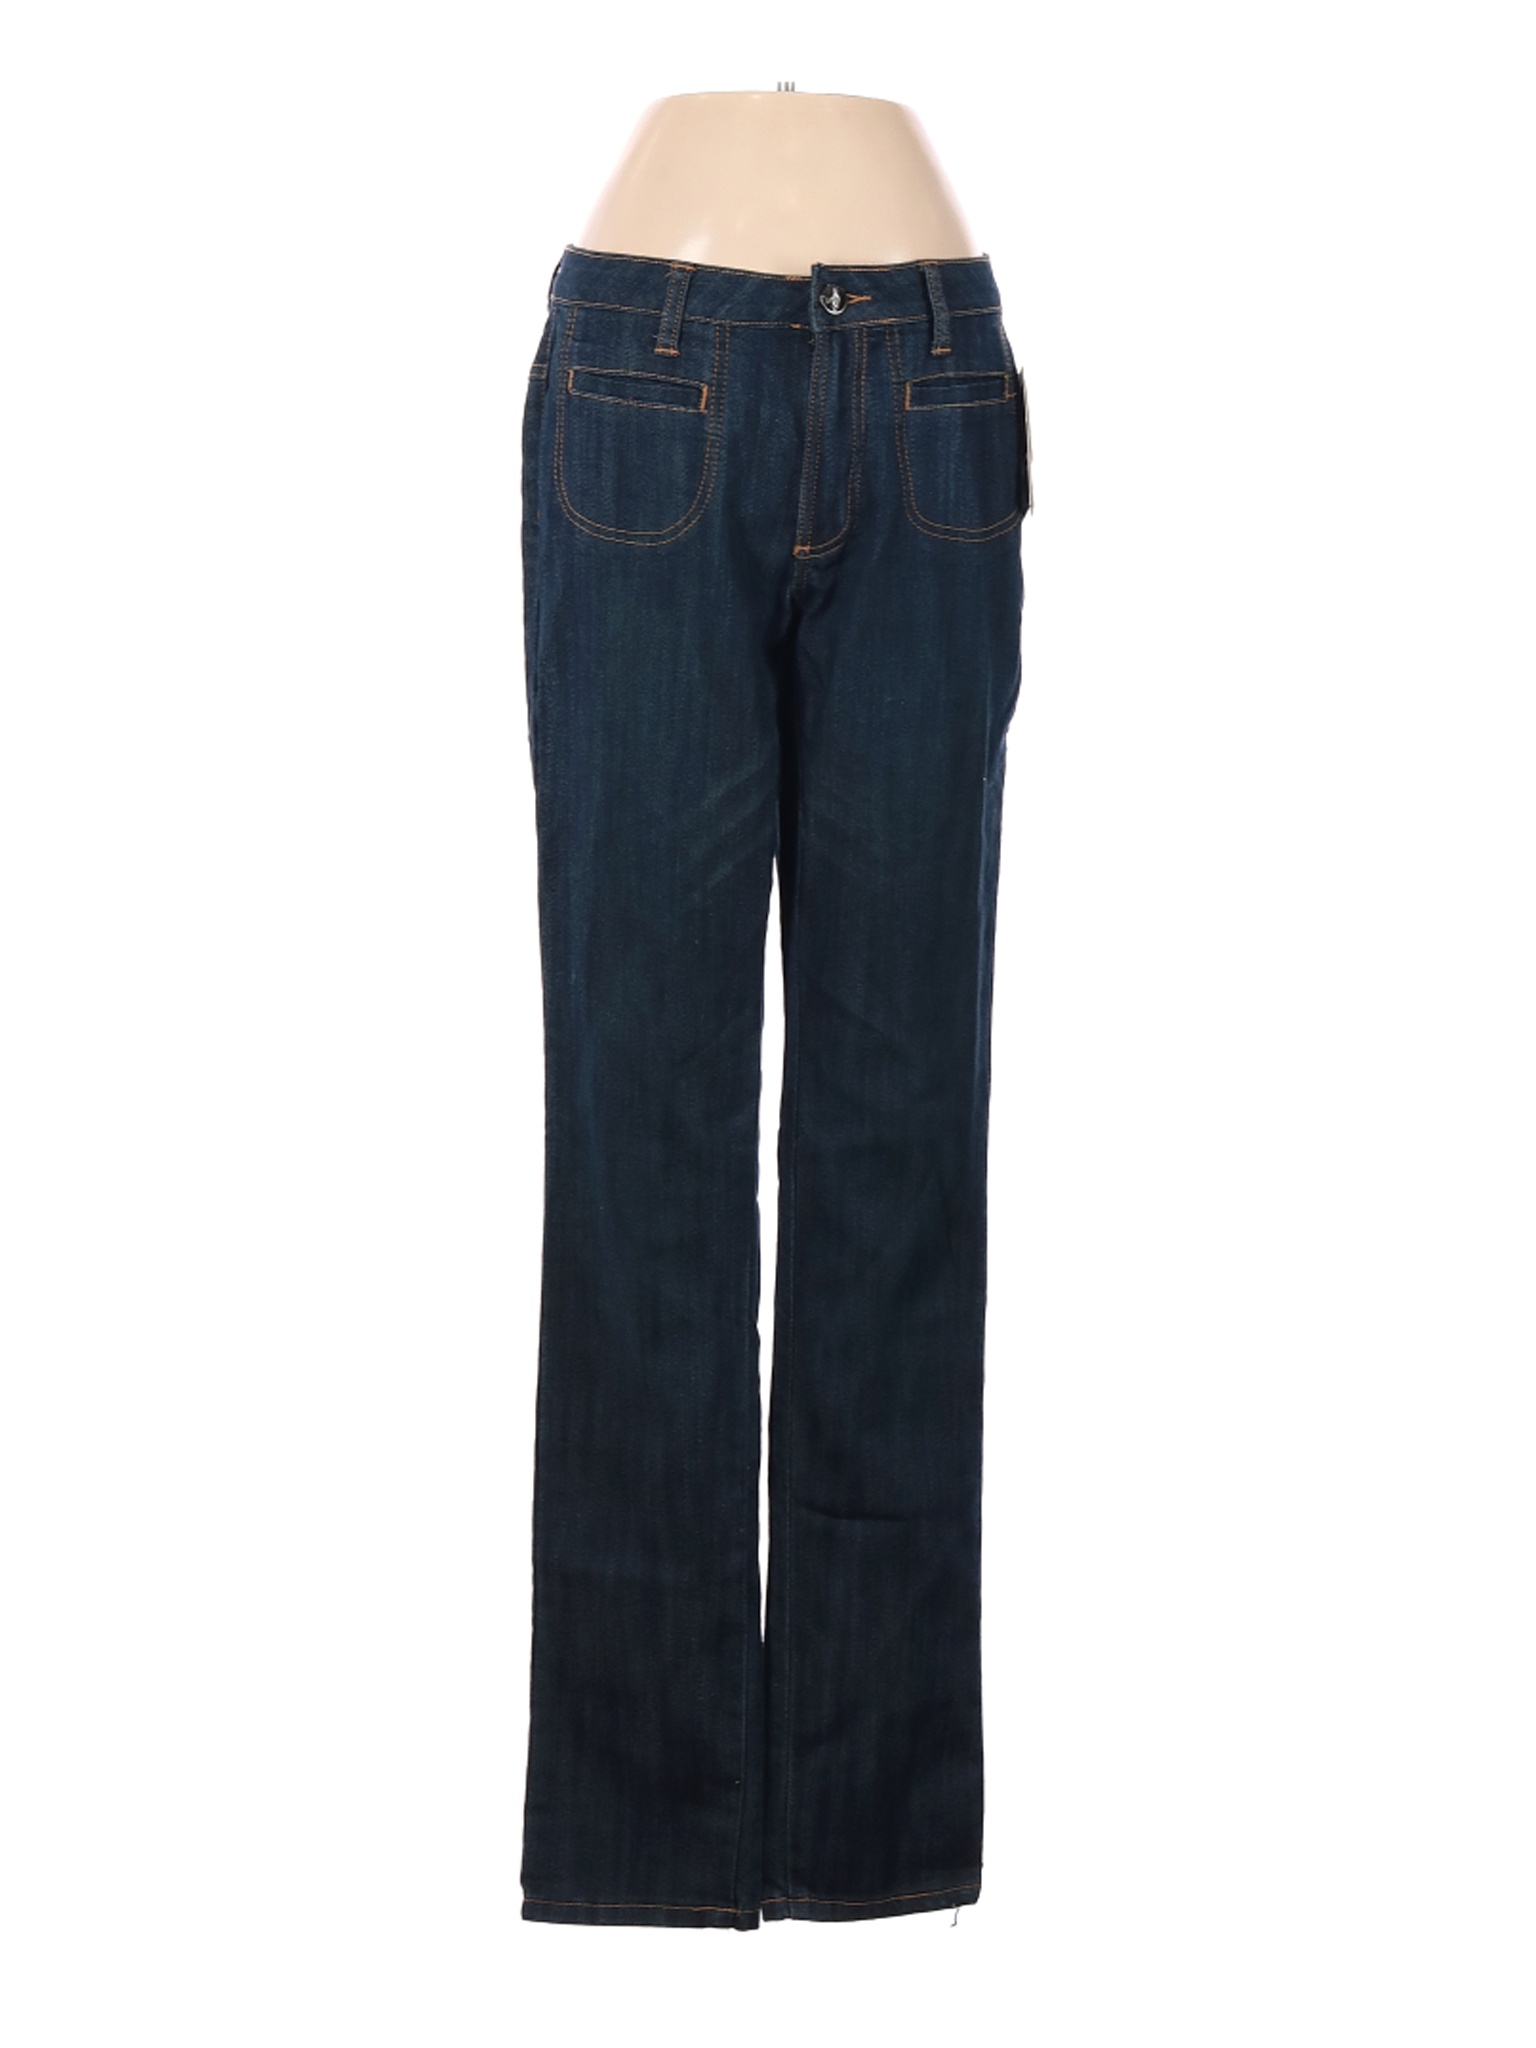 NWT Rocawear Women Blue Jeans 3 | eBay